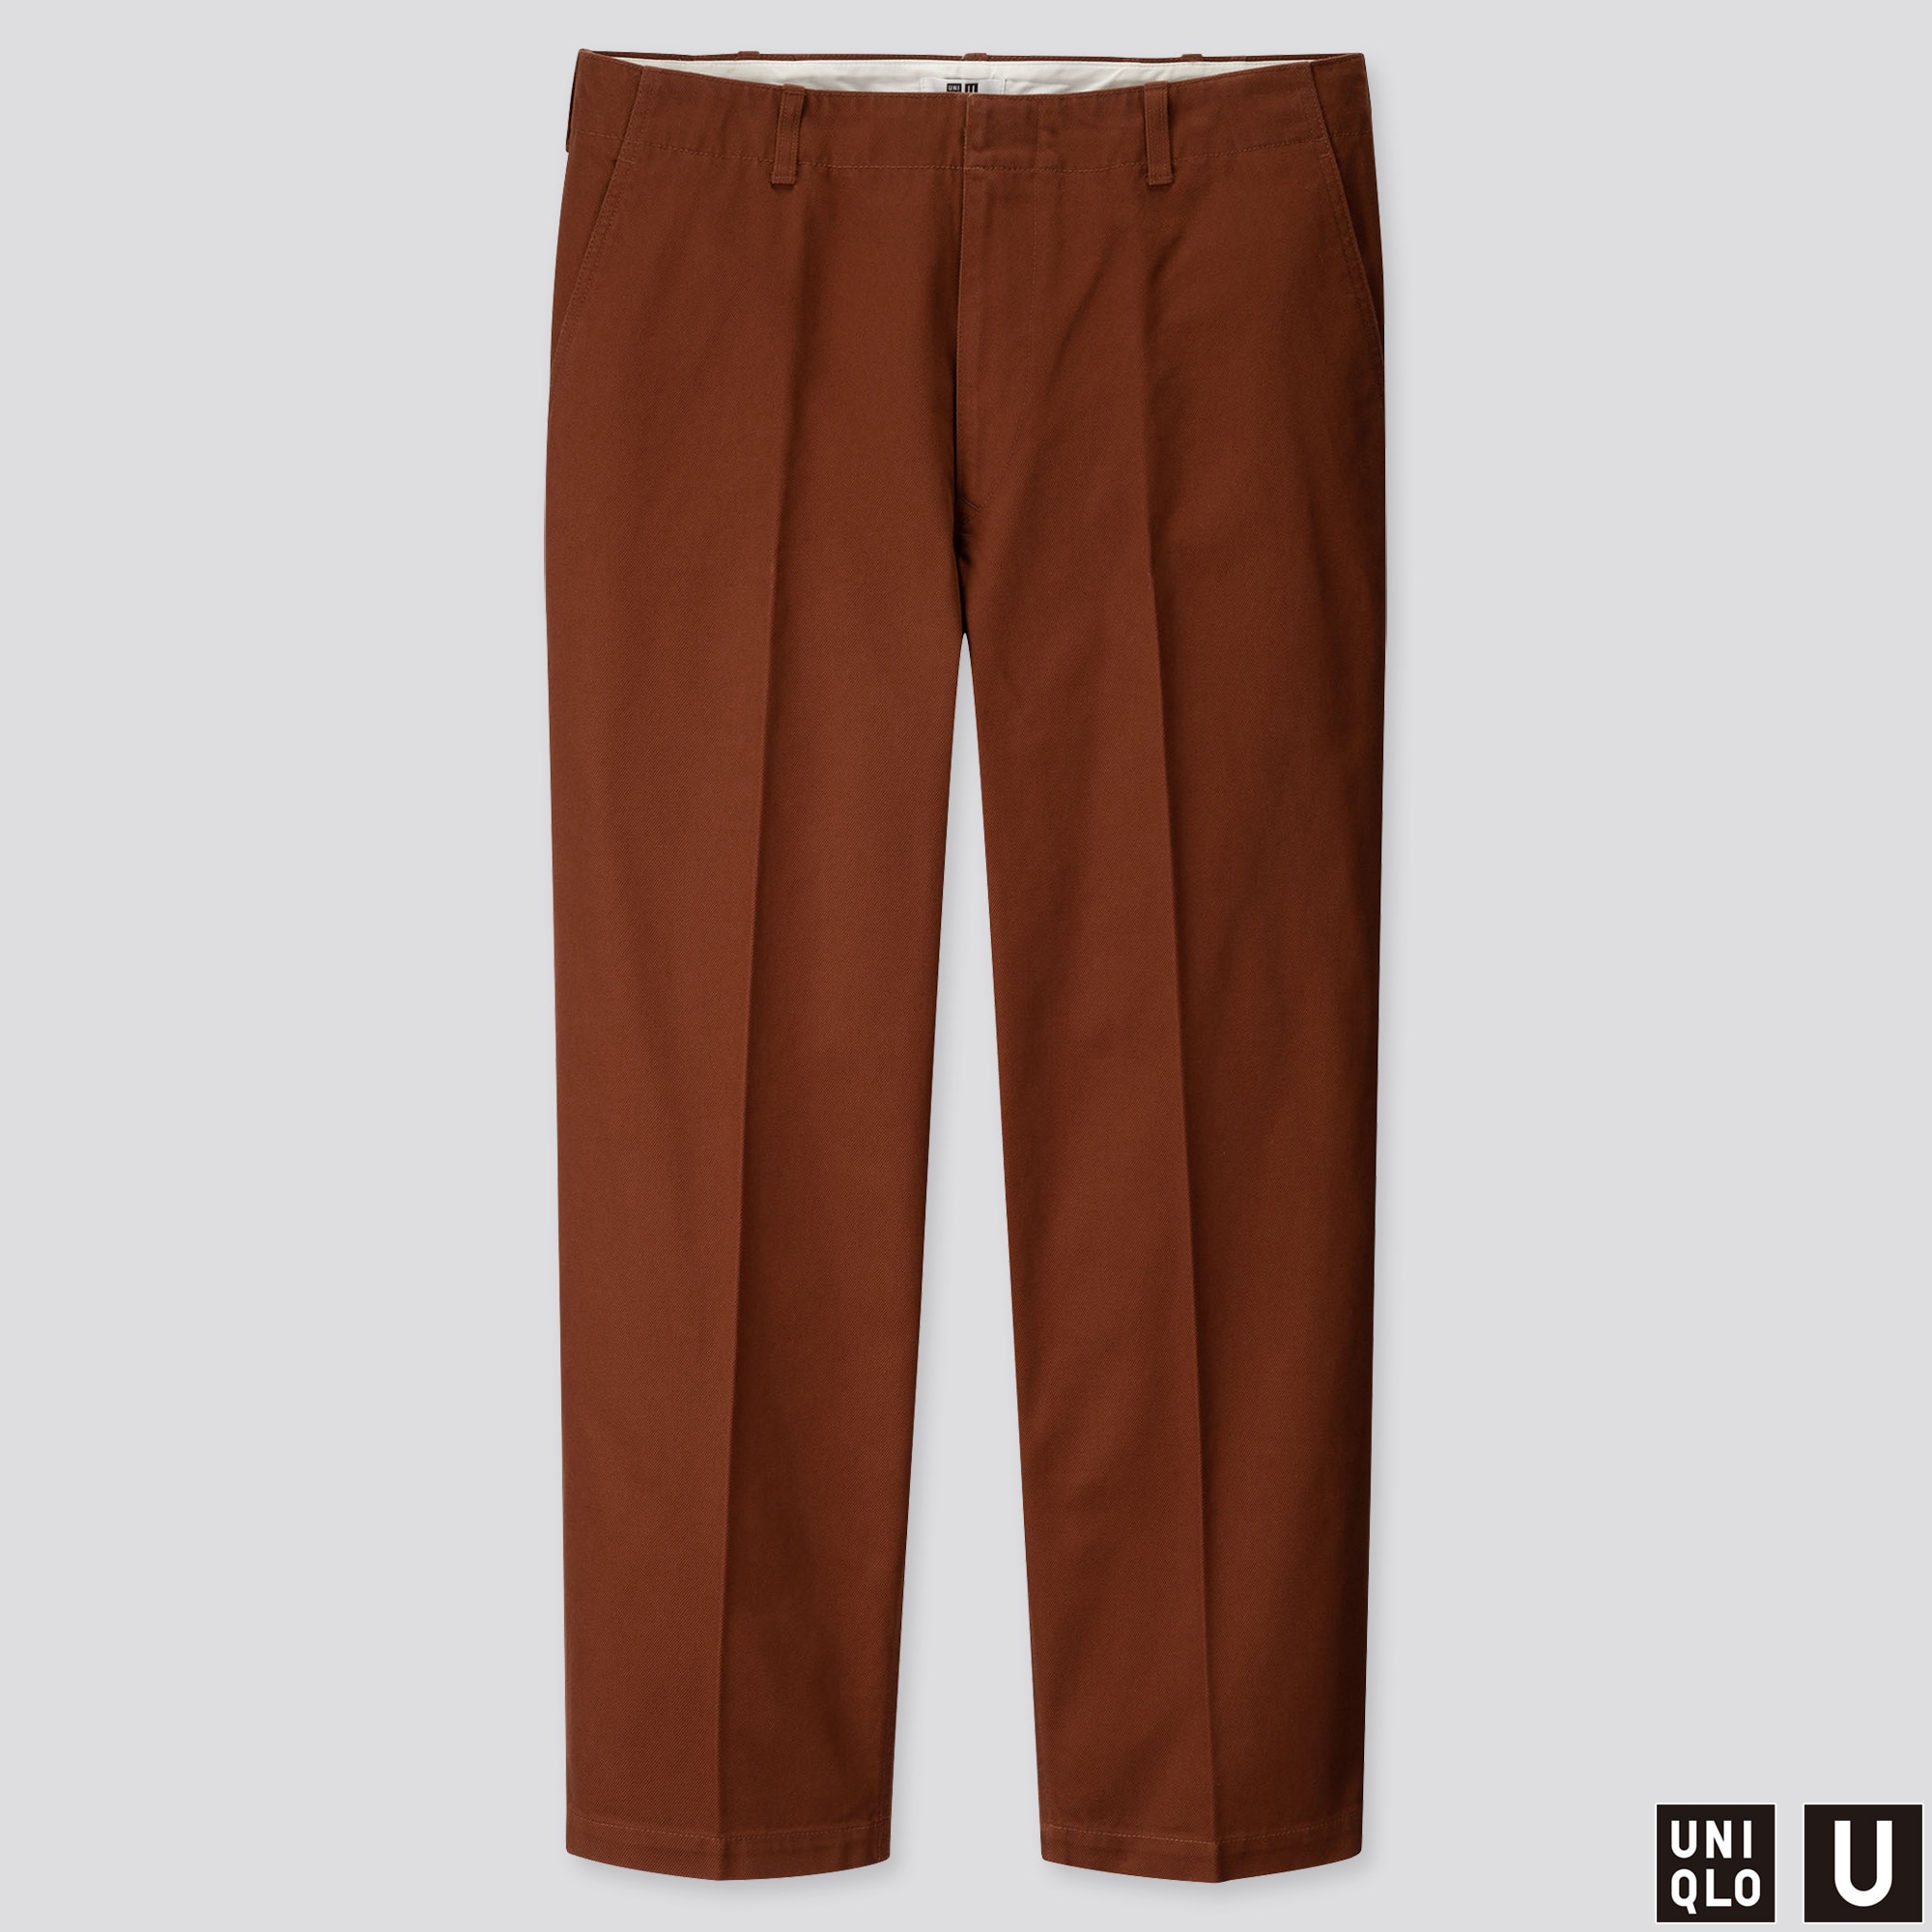 Uniqlo Chino Pants Size Chart